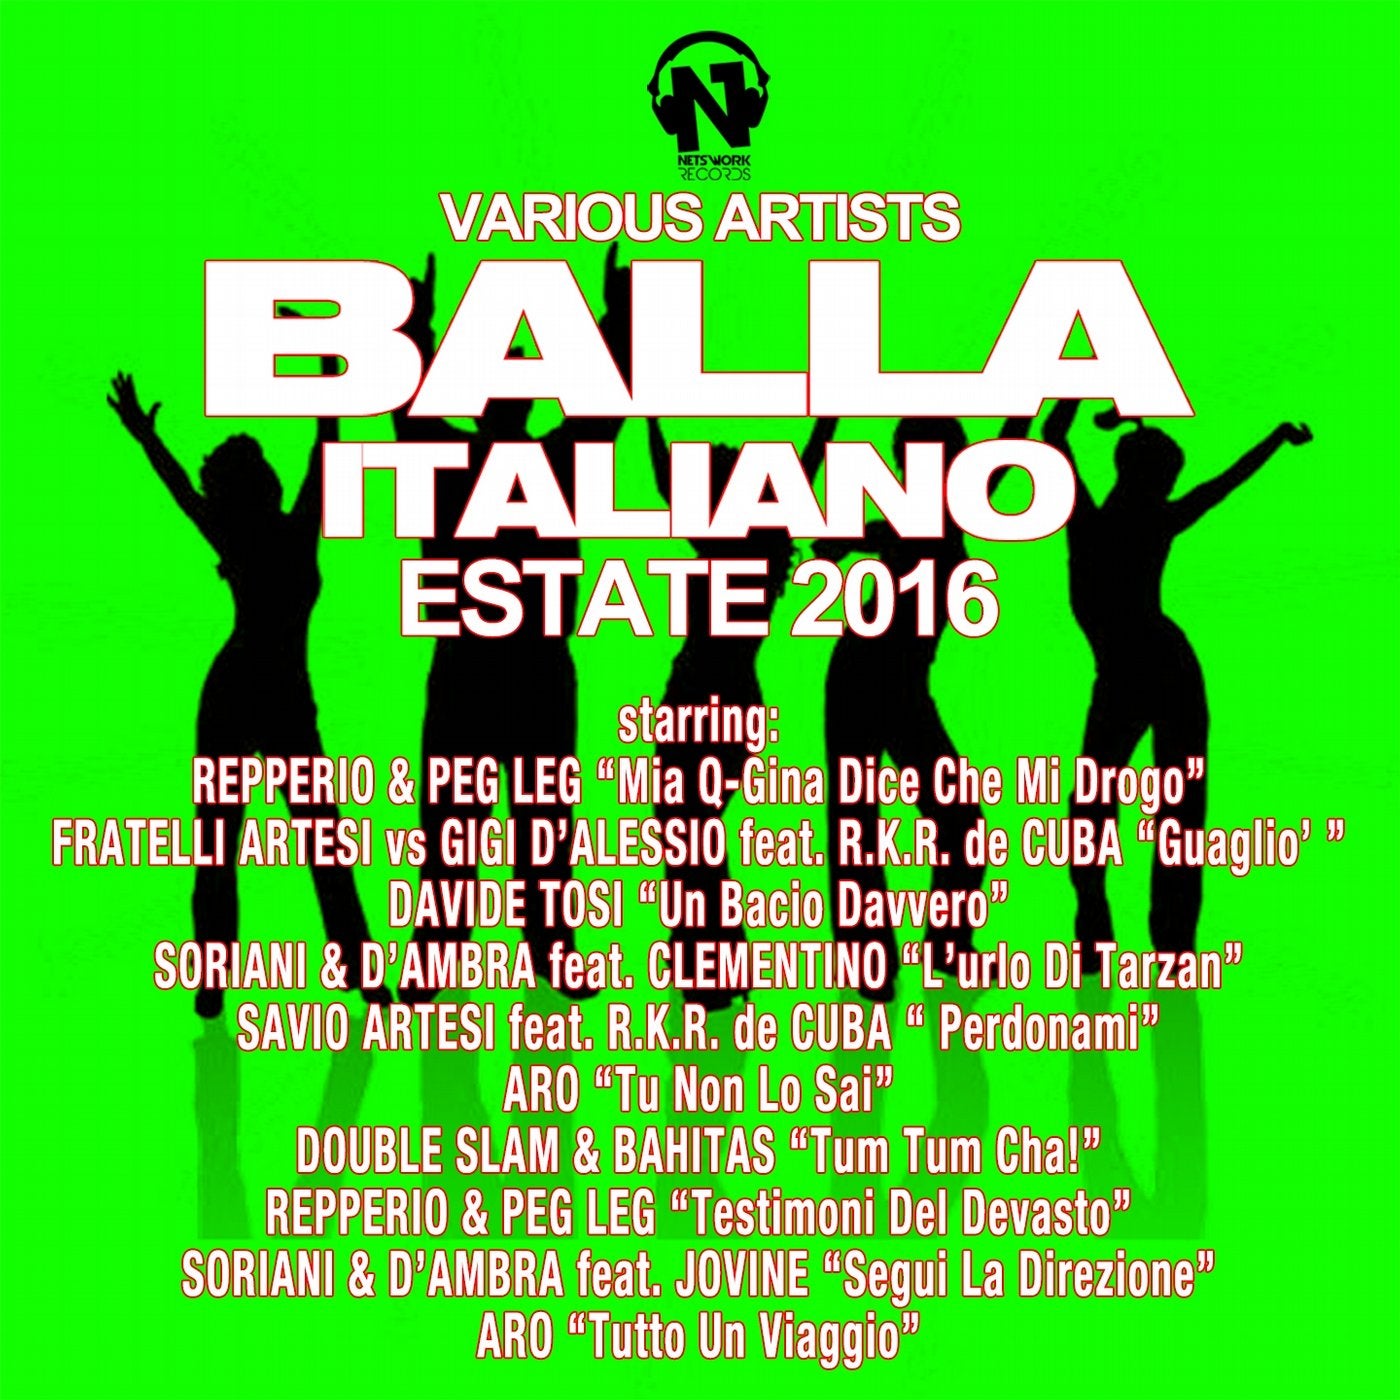 Balla italiano estate 2016